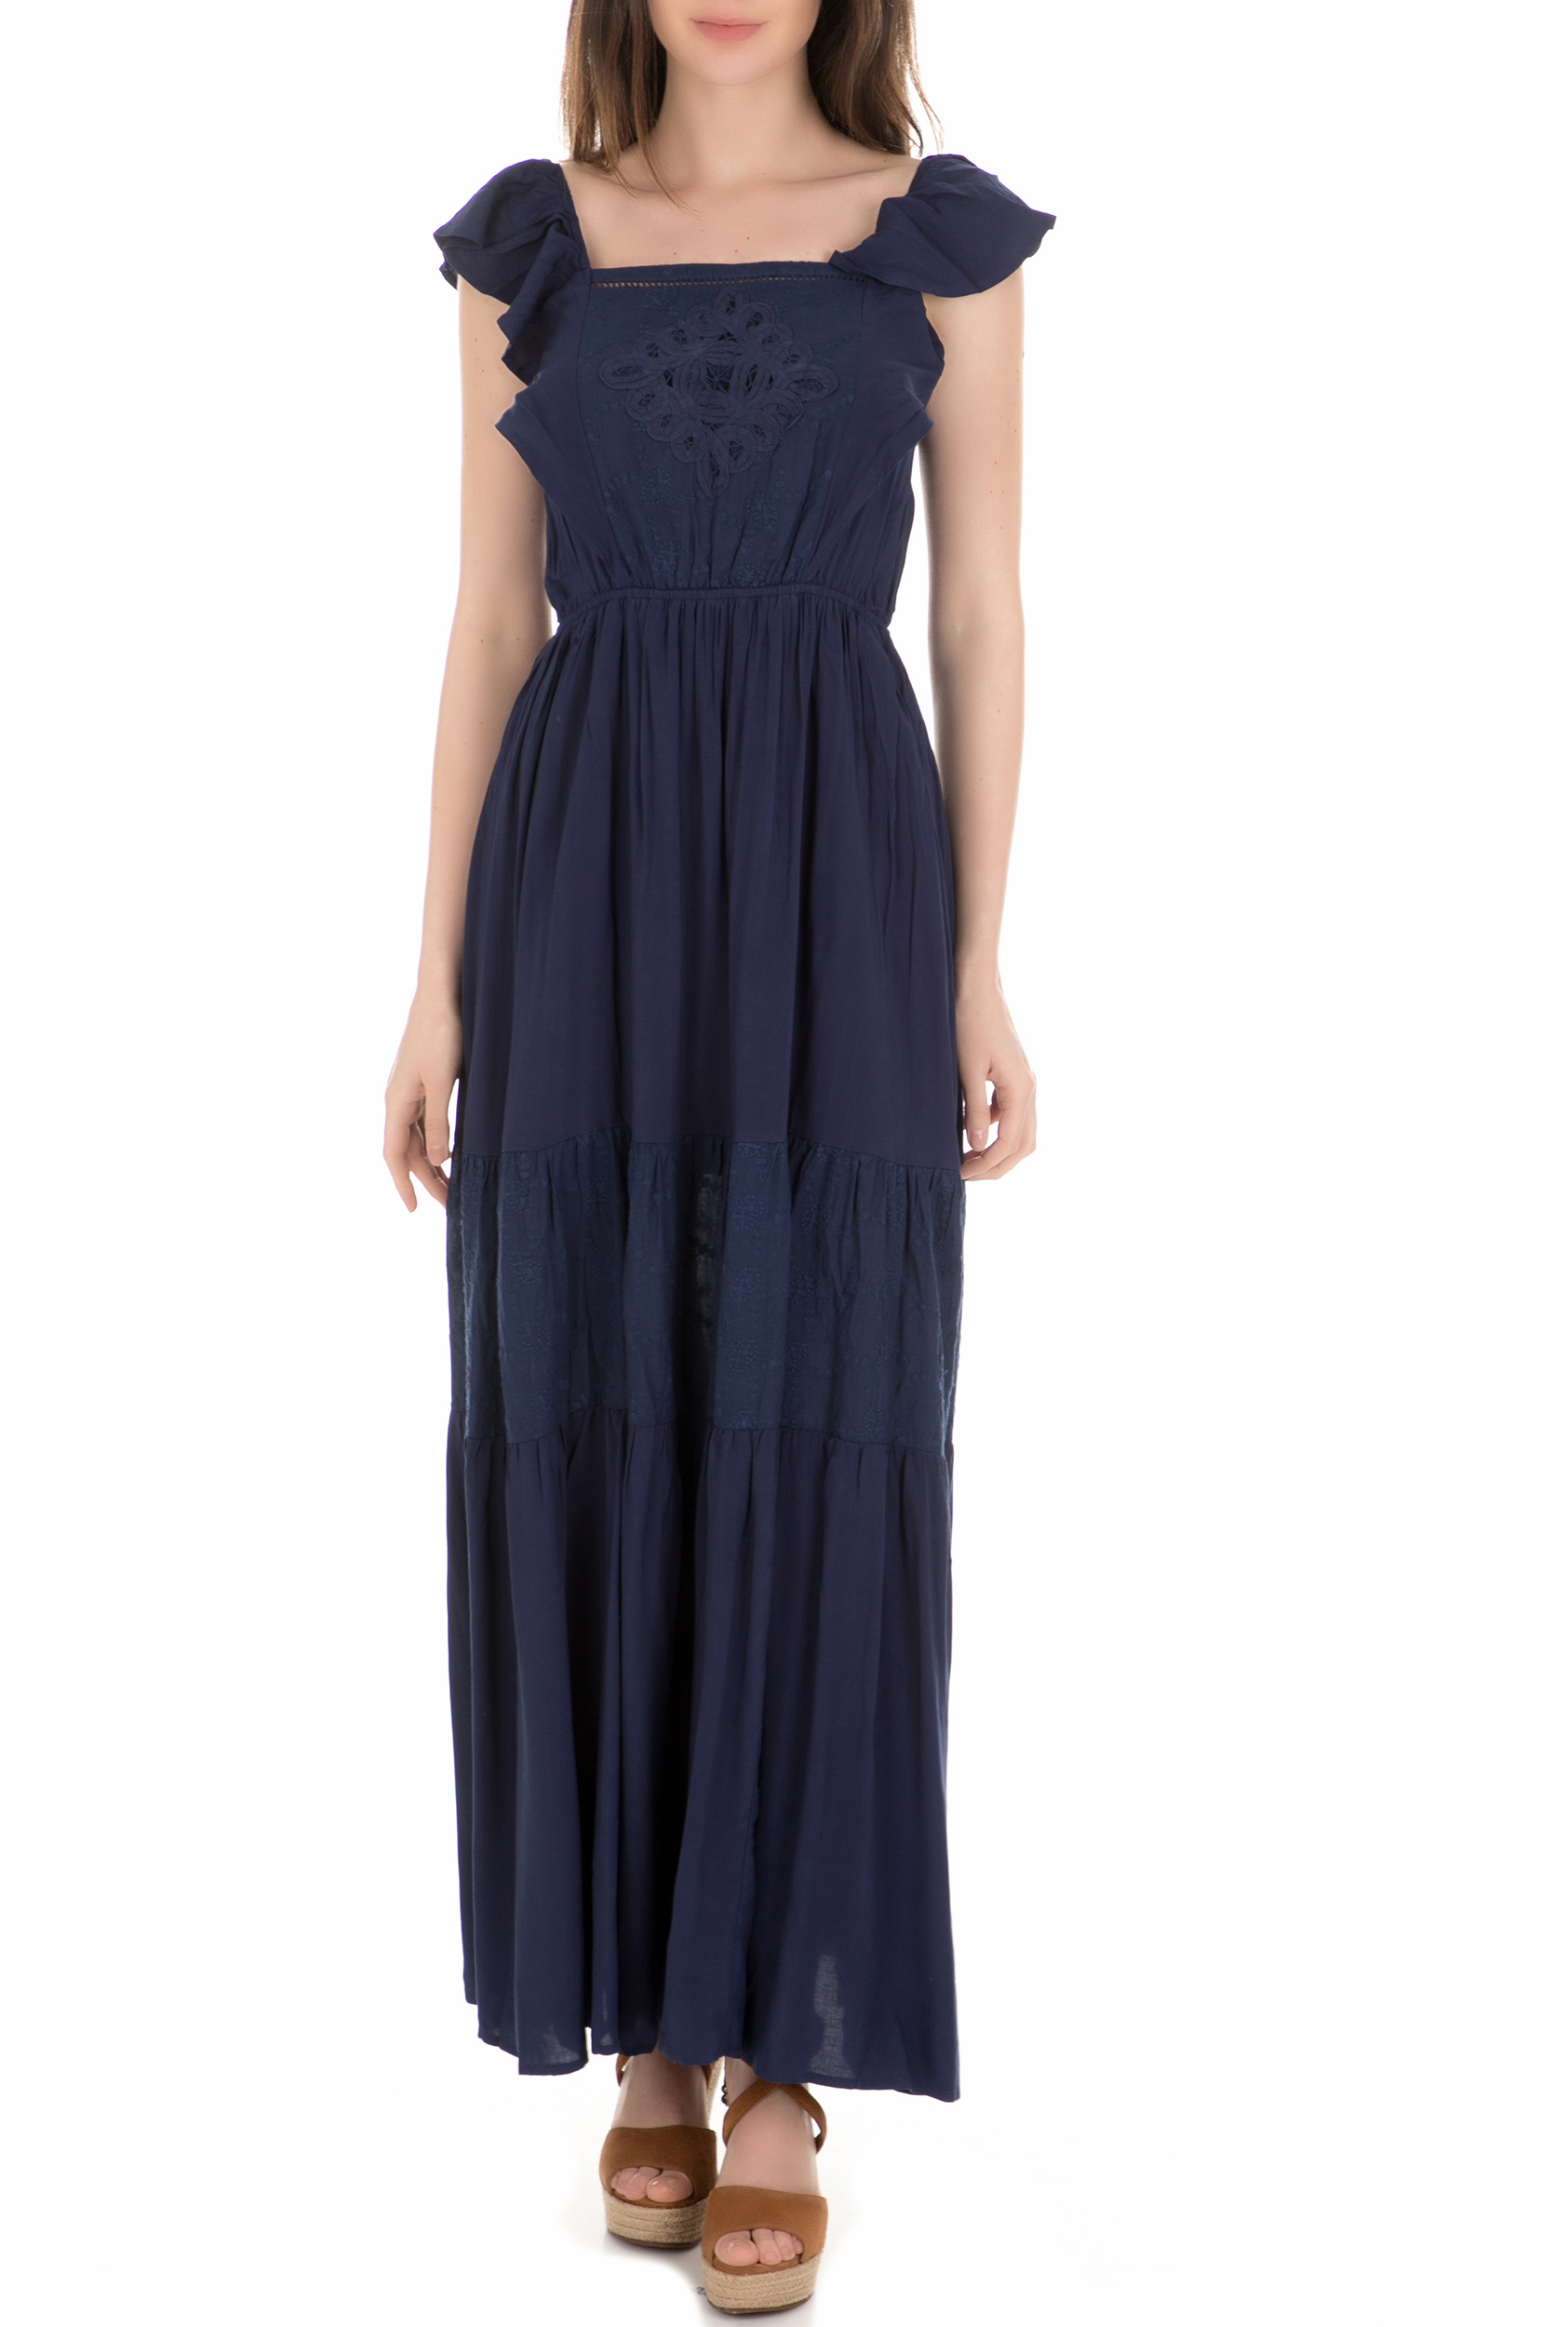 MOLLY BRACKEN - Γυναικείο φόρεμα MOLLY BRACKEN μπλε Γυναικεία/Ρούχα/Φορέματα/Μάξι